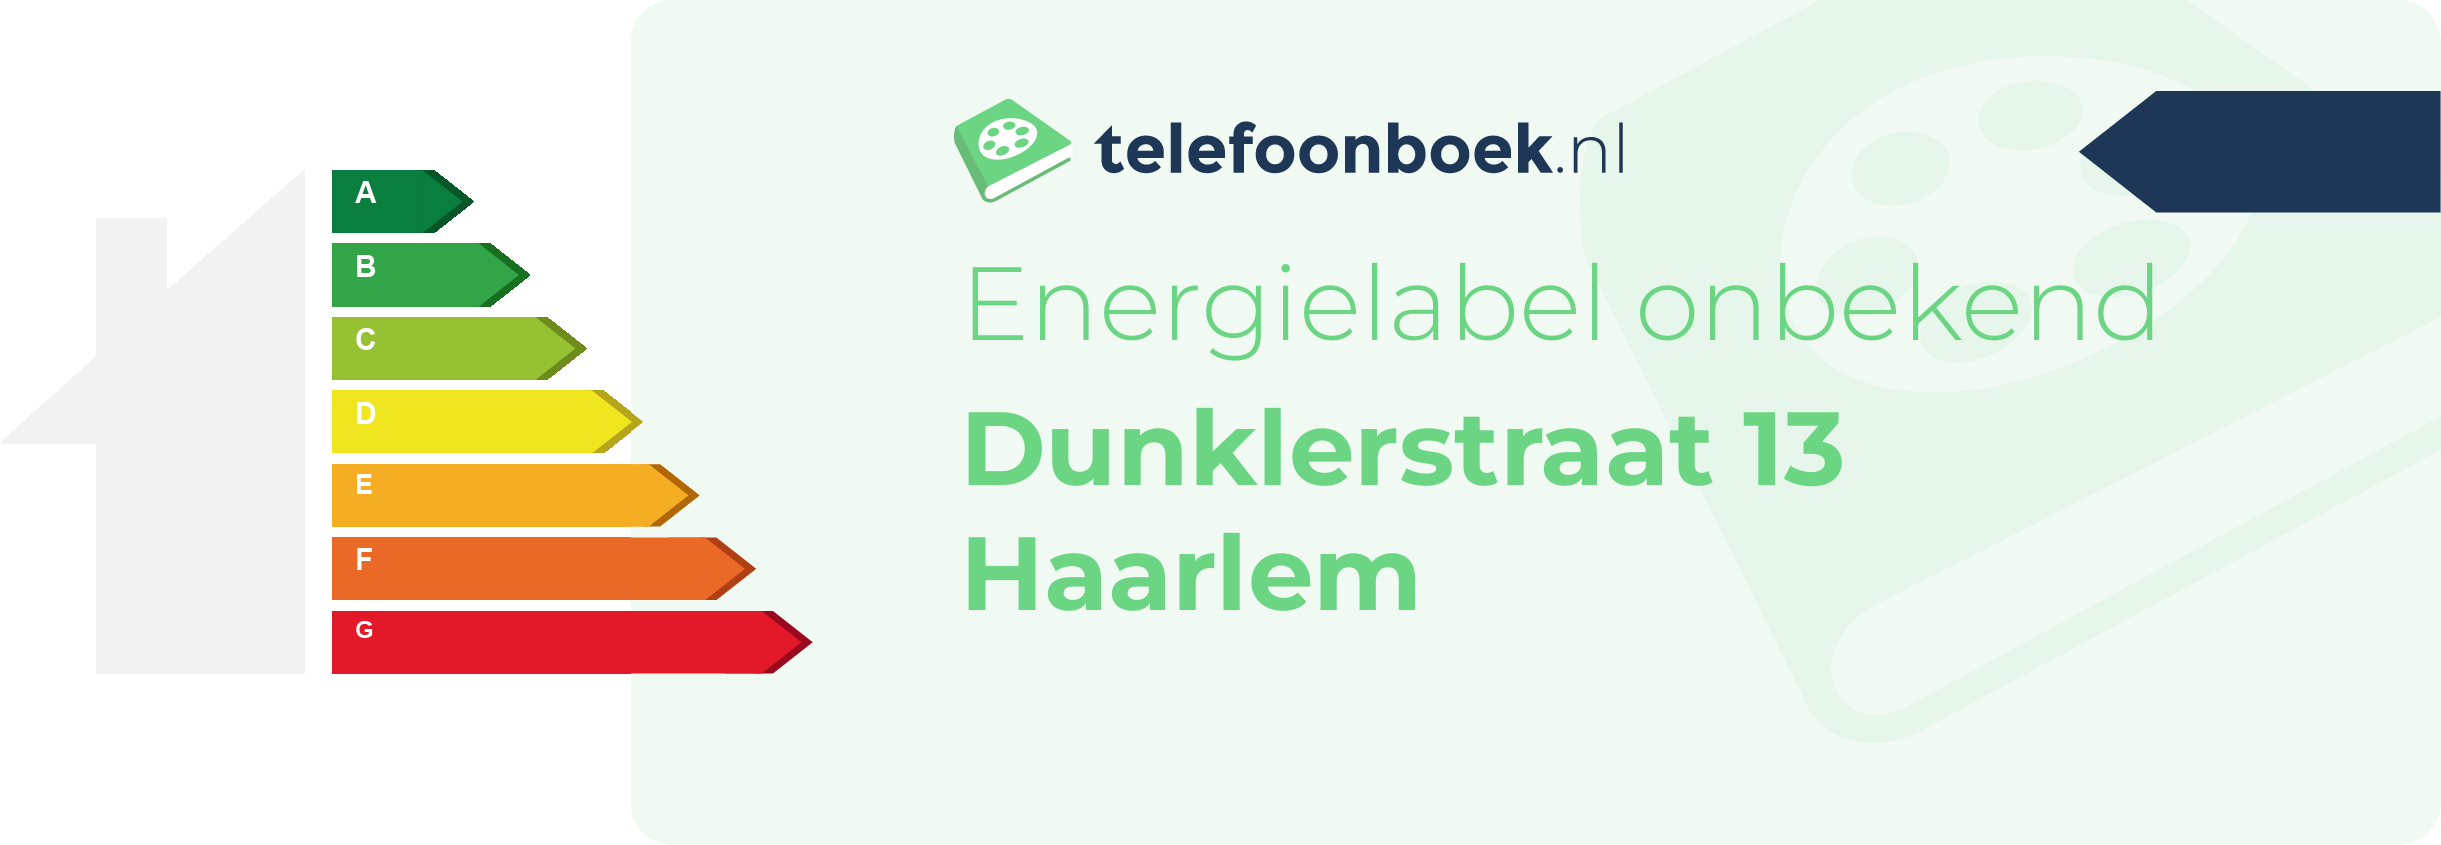 Energielabel Dunklerstraat 13 Haarlem